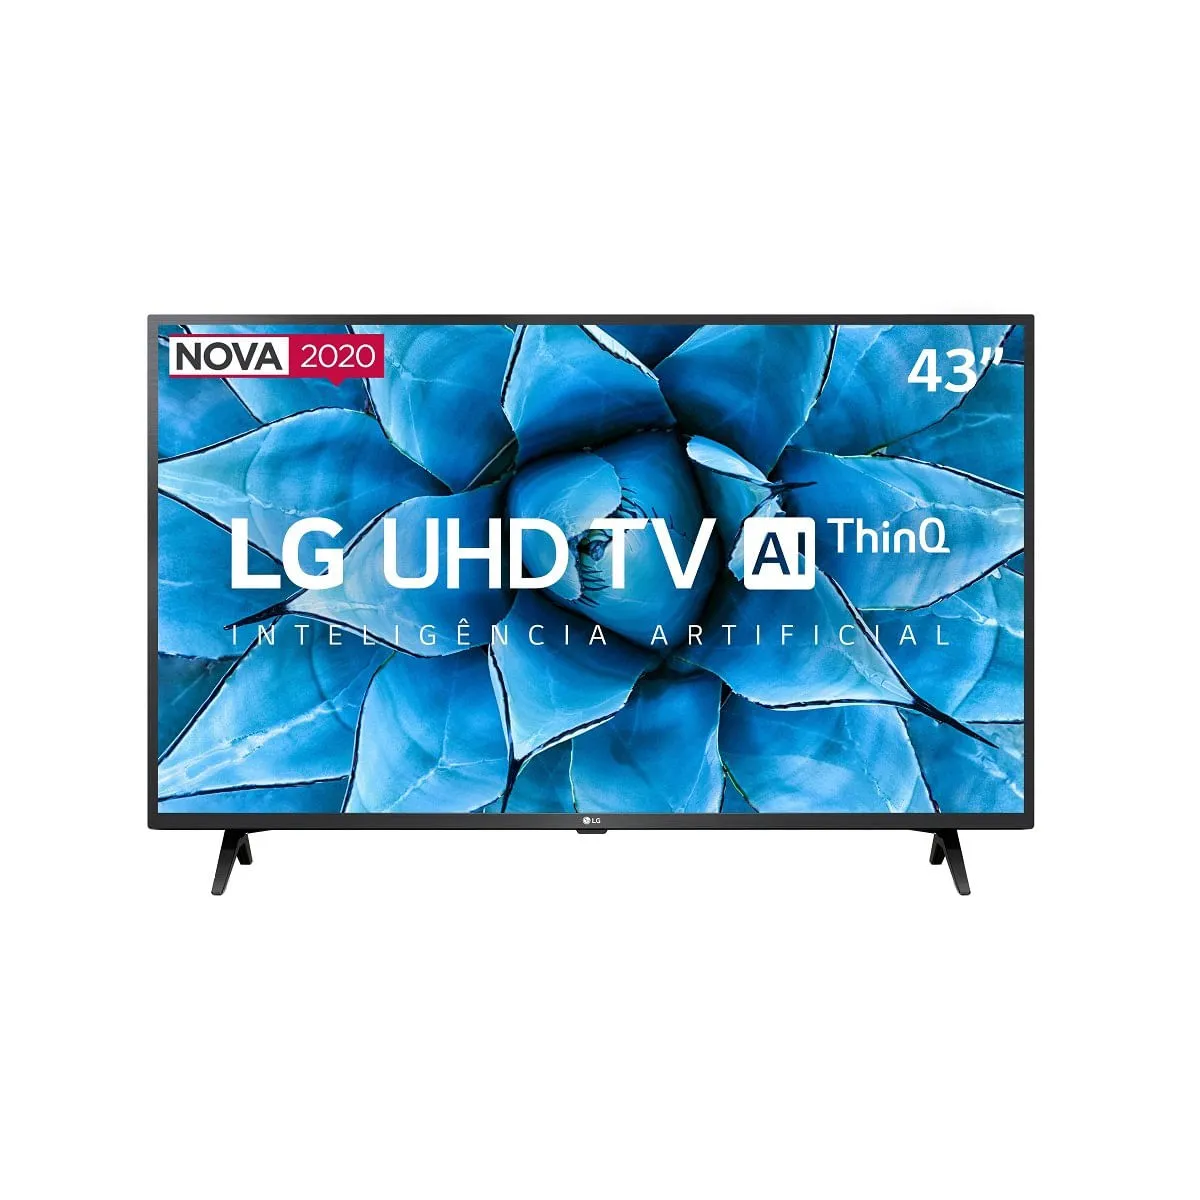 Smart TV 43" LG LED 4K